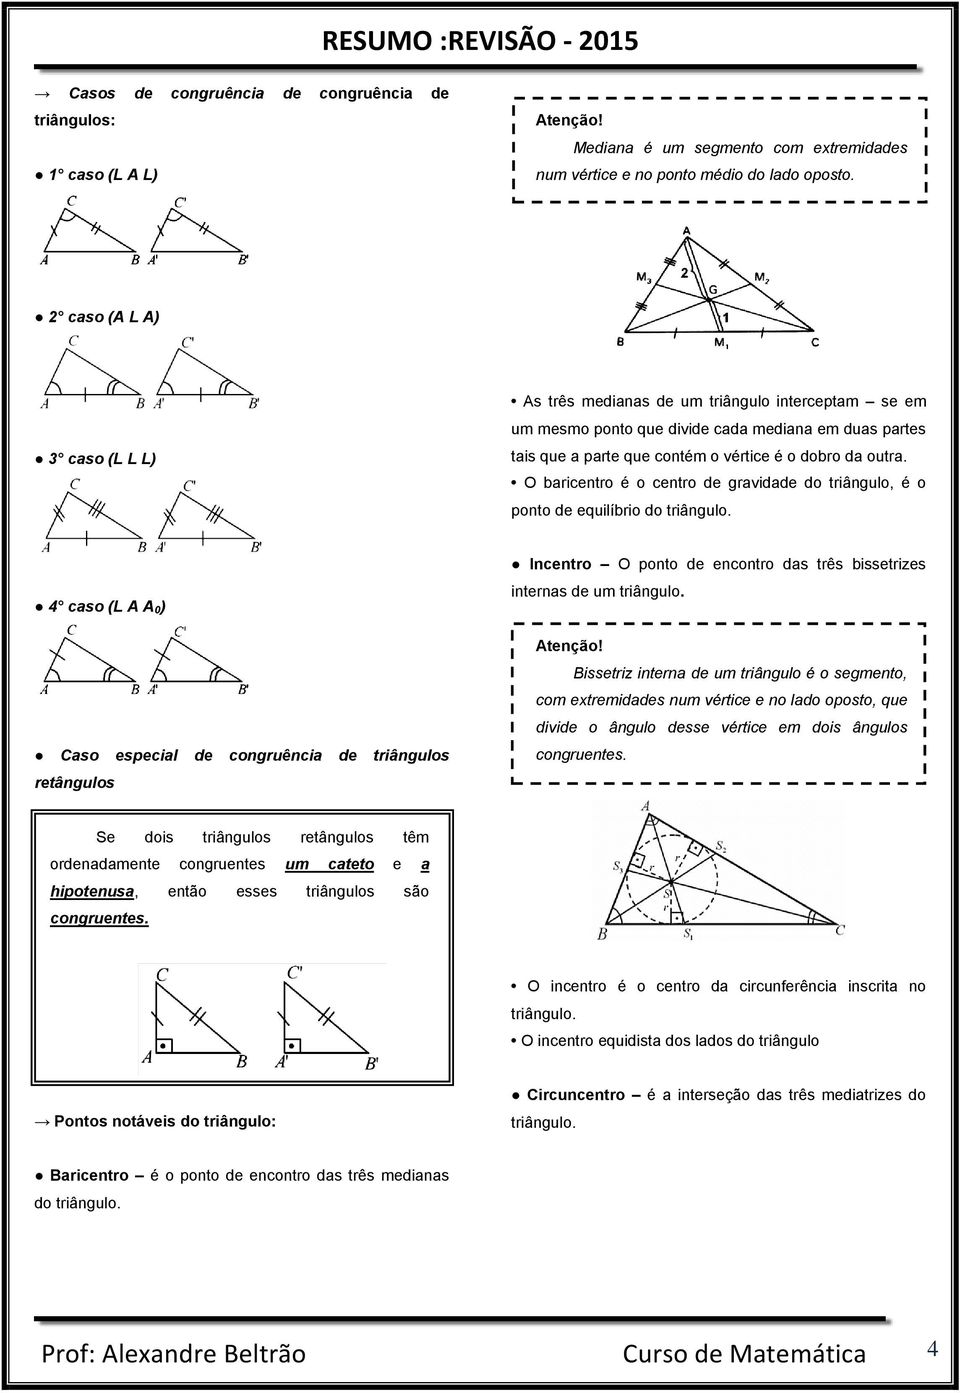 O baricentro é o centro de gravidade do triângulo, é o ponto de equilíbrio do triângulo.